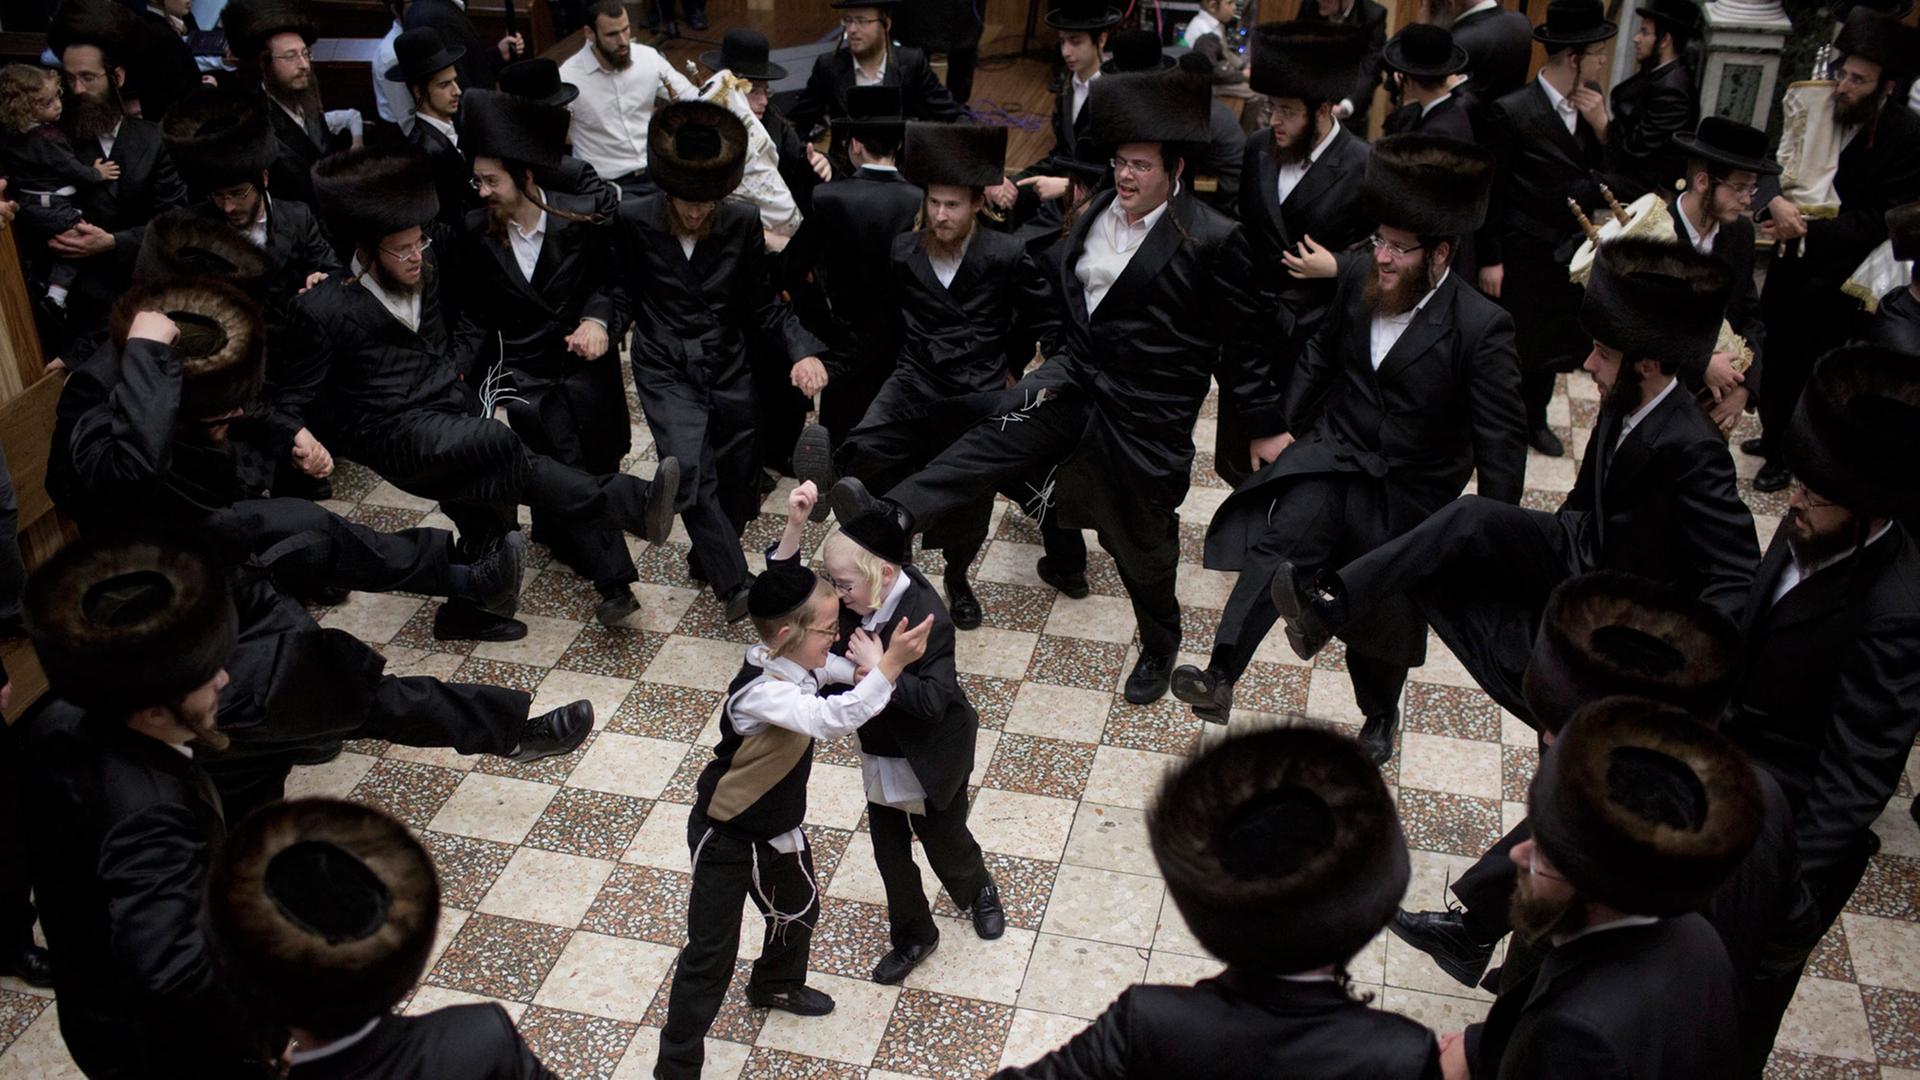 Jüdische Männer tanzen in einem Kreis, in der Mitte stehen zwei kleine Jungen.